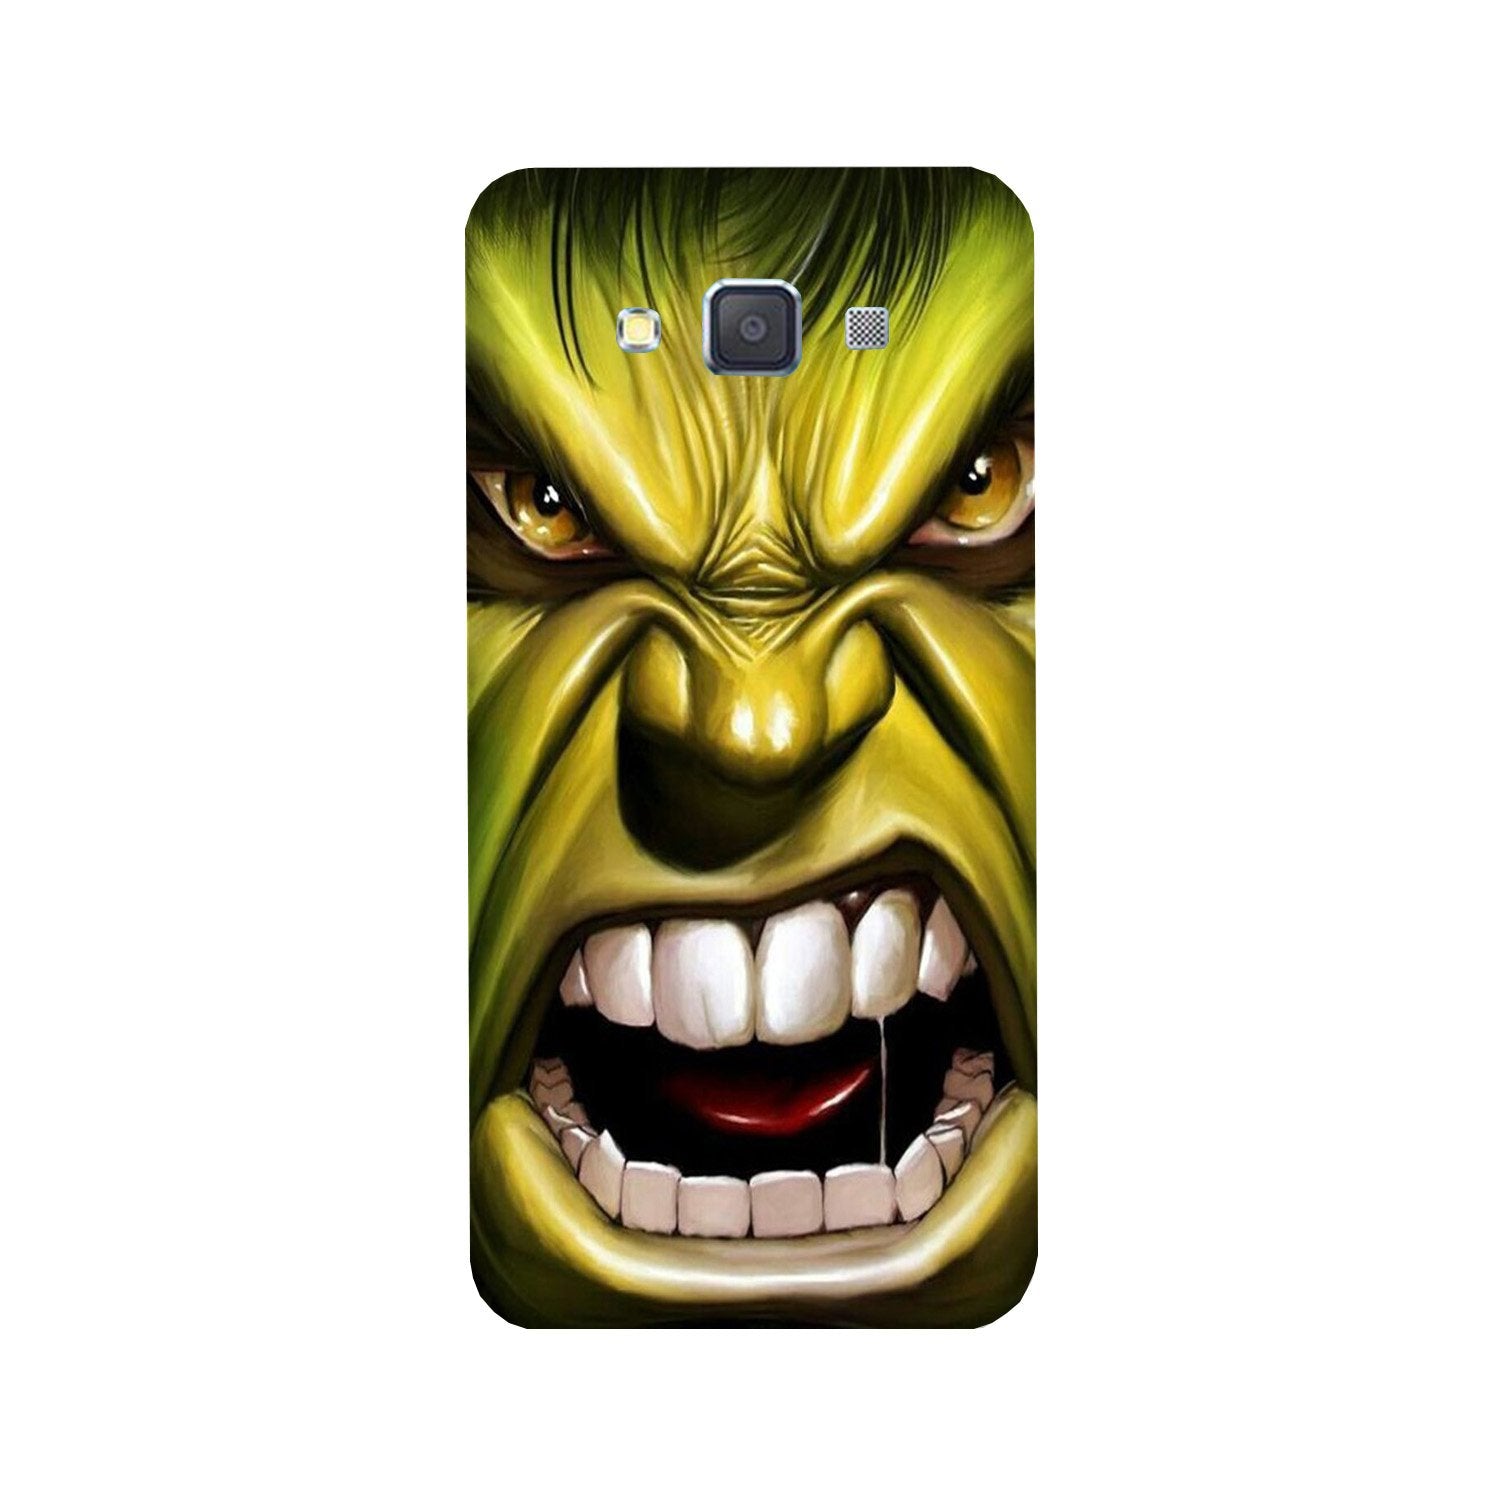 Hulk Superhero Case for Galaxy E5(Design - 121)